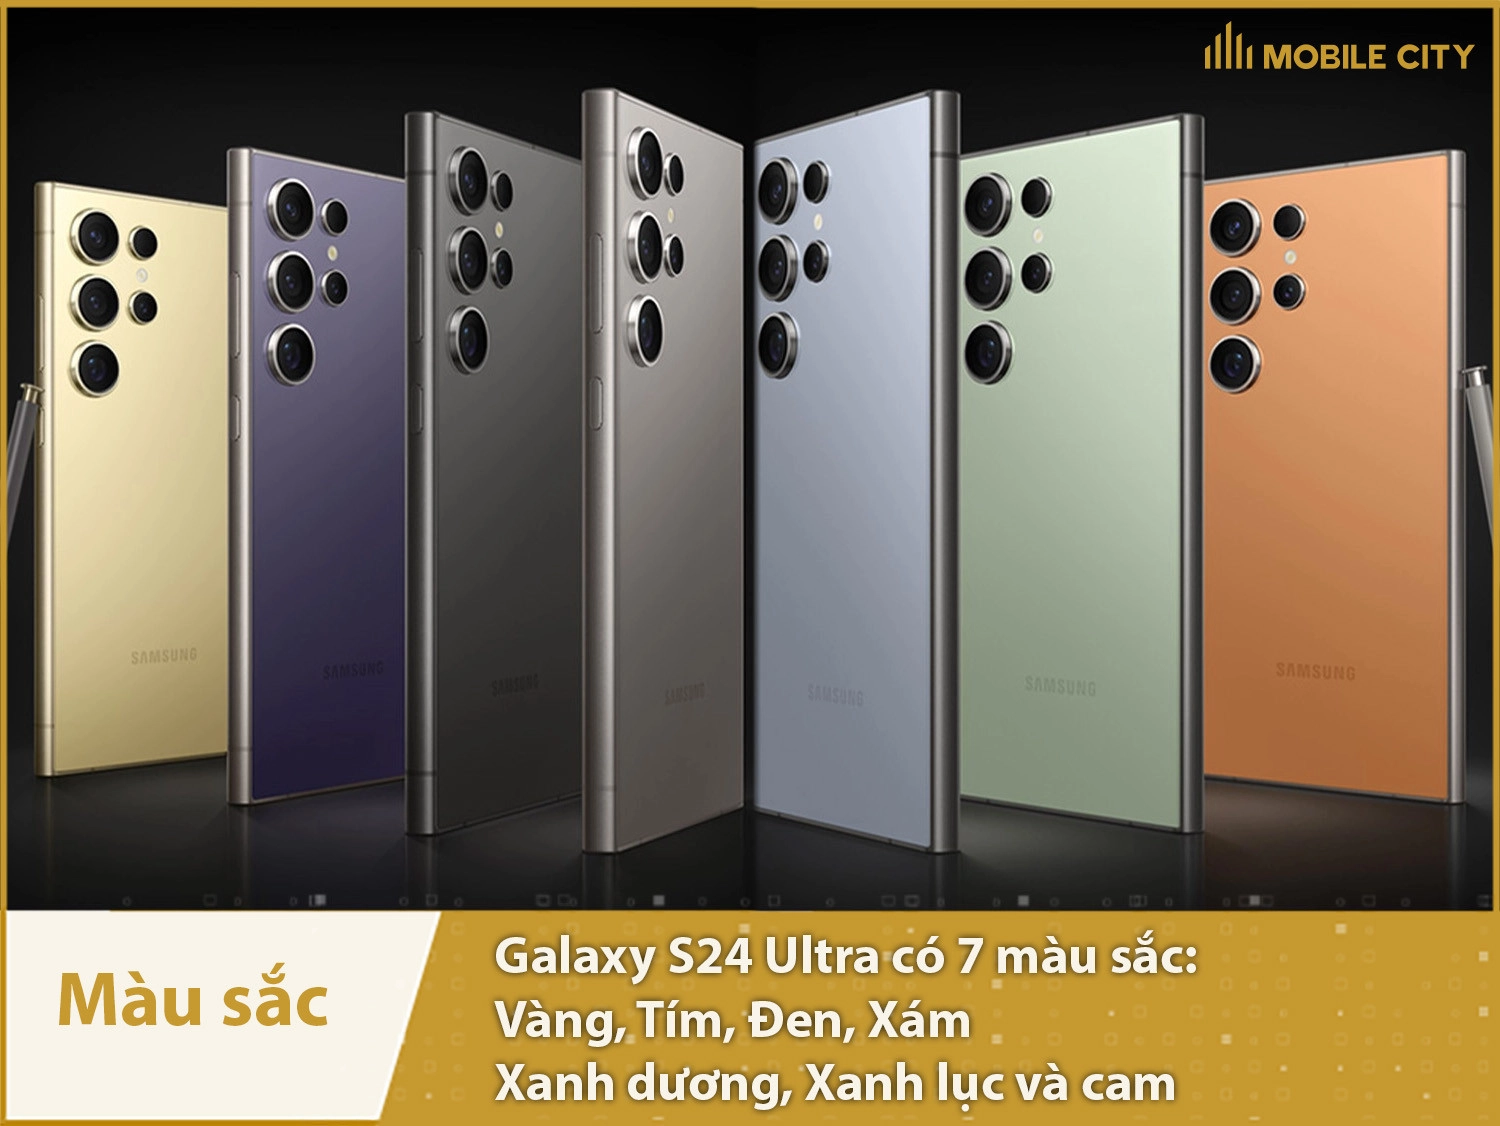 Samsung Galaxy S24 Ultra có 7 màu sắc